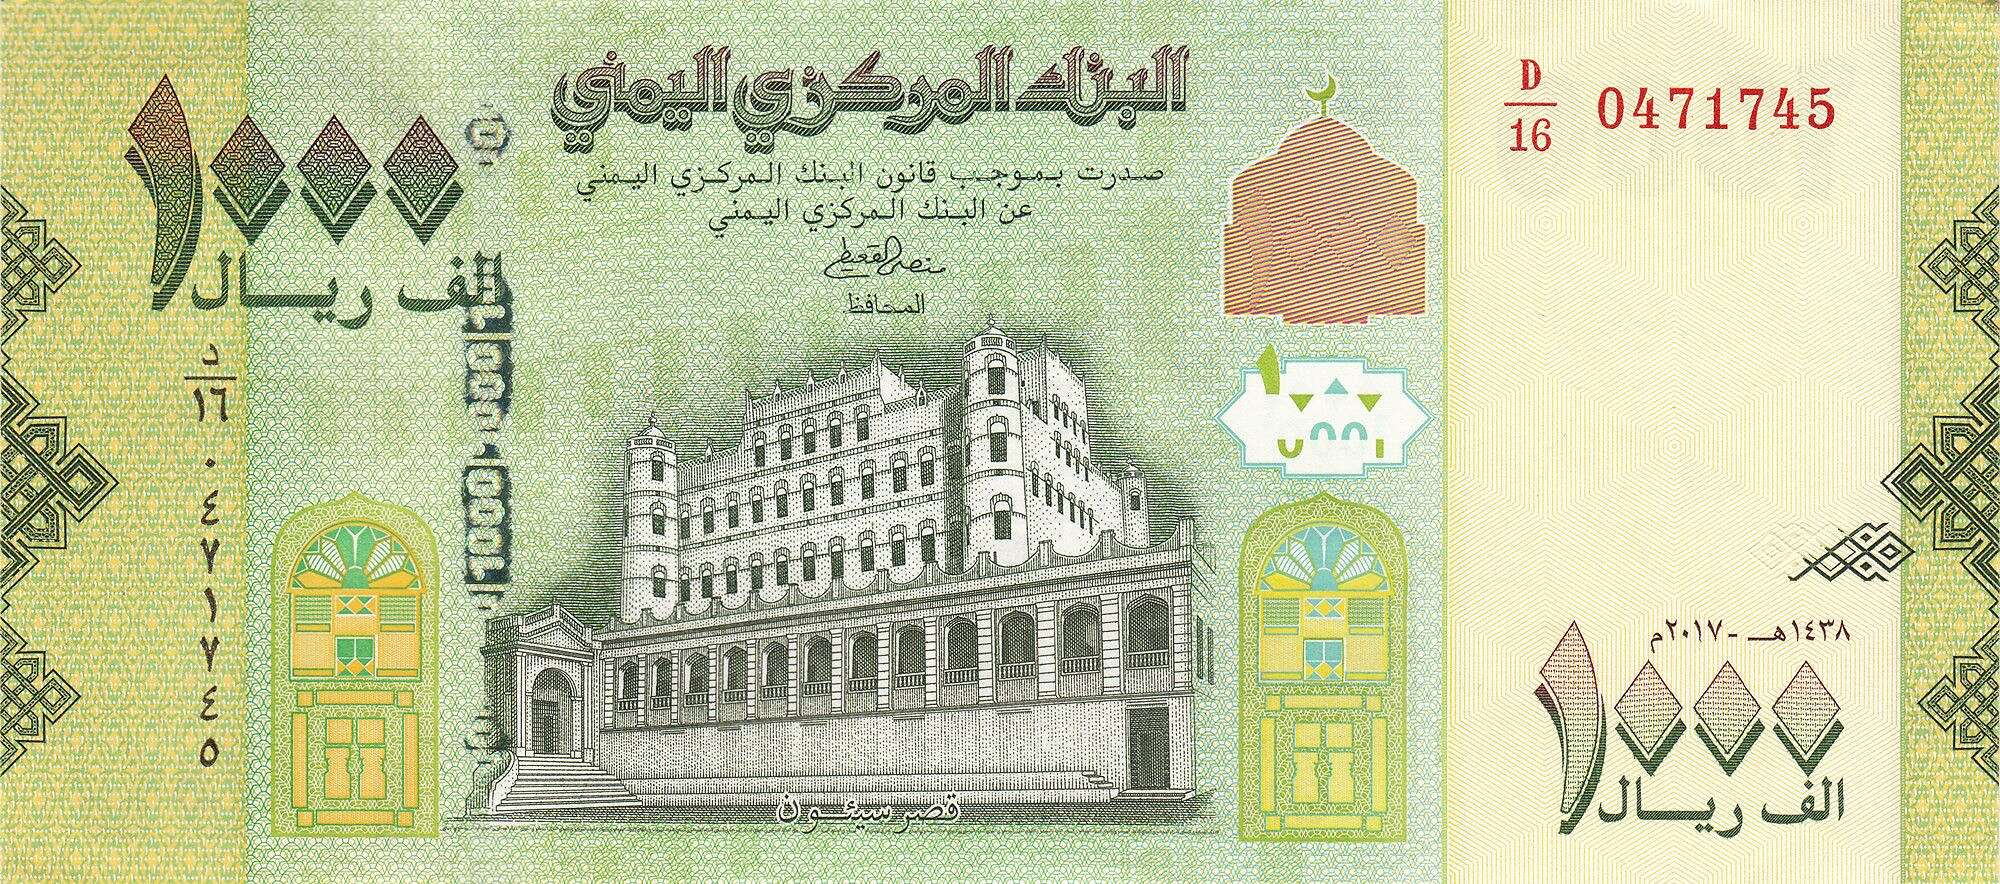 الريال اليمني يسجل تحسنا جديدا أمام العملات الأجنبية بصنعاء وعدن اليوم.. السعر الآن